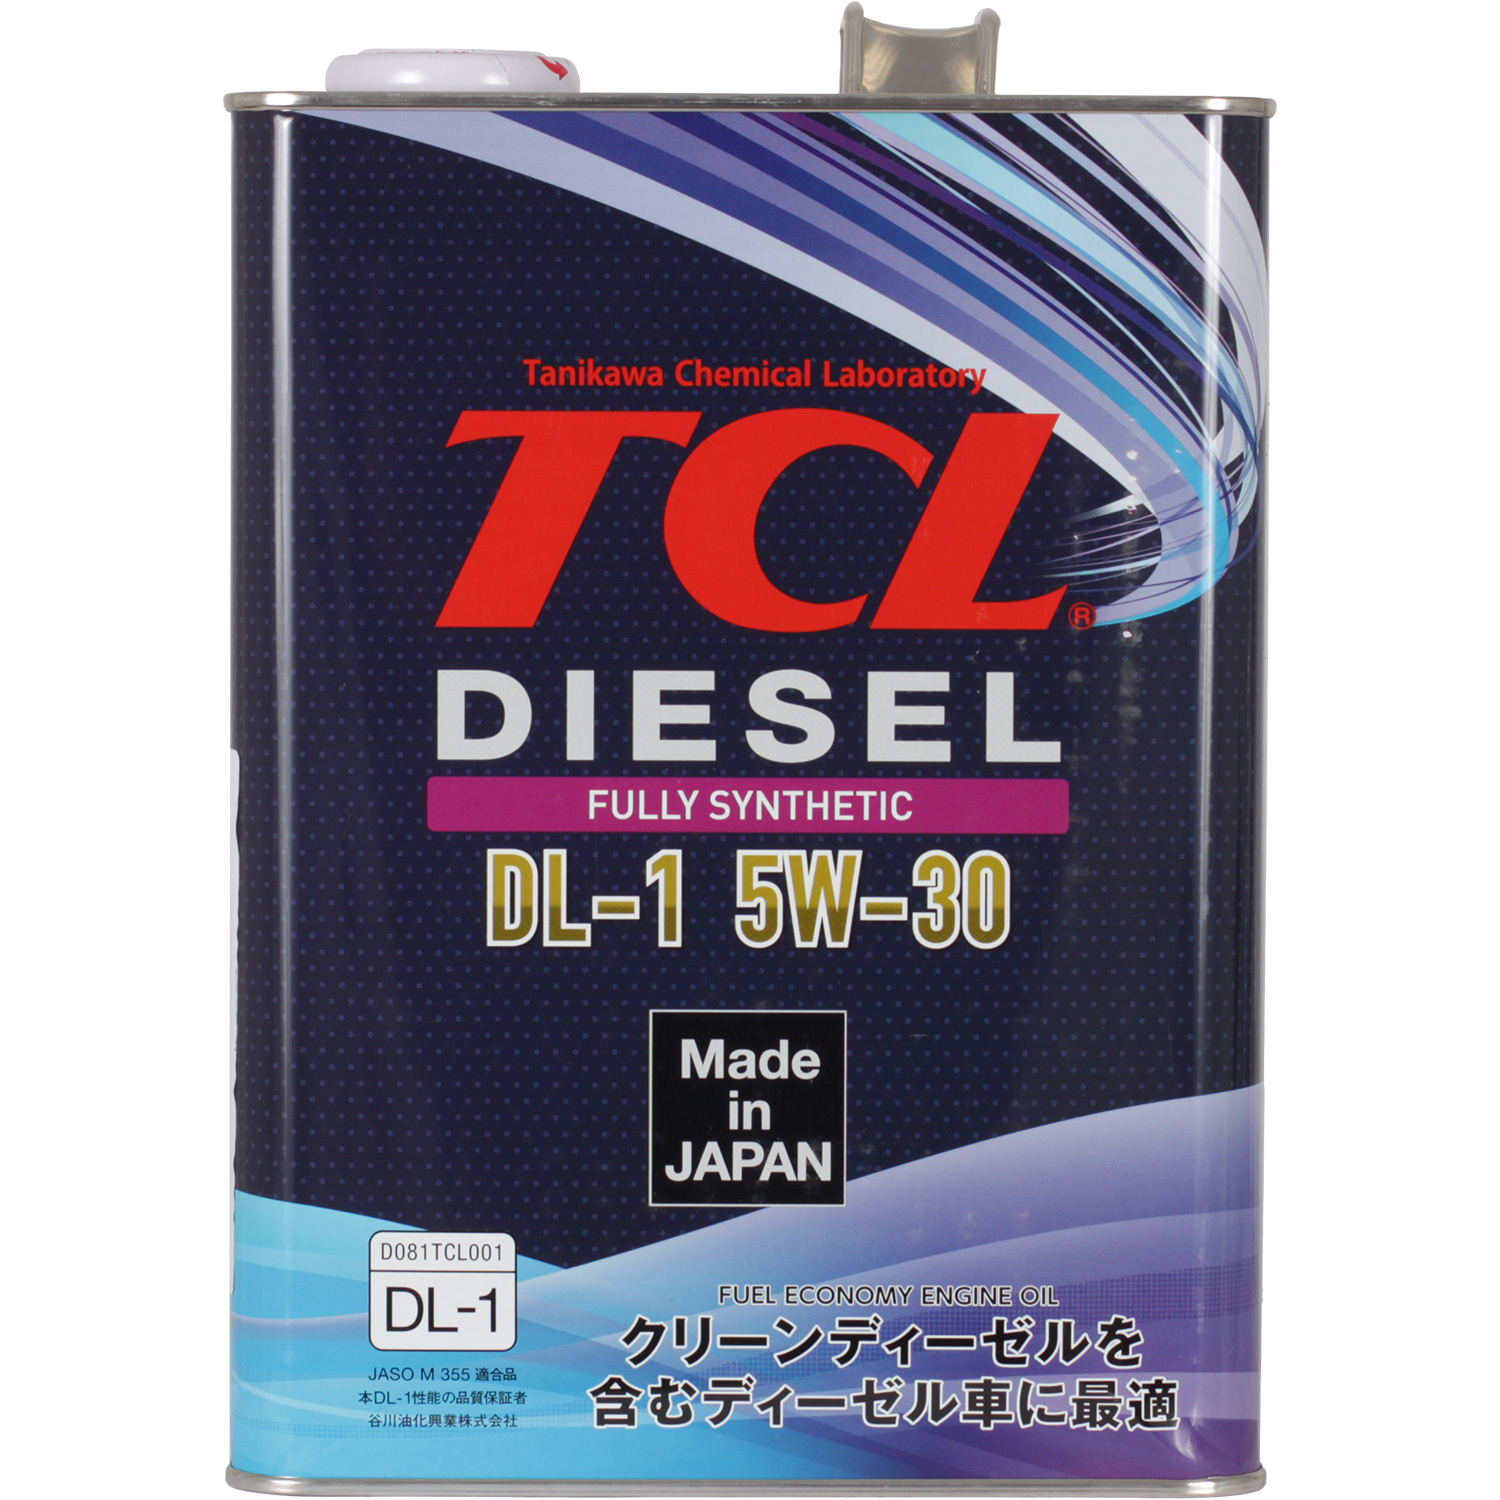 Масло dl 1 5w30. Масло для дизельных двигателей TCL Diesel, fully Synth, DL-1, 5w30, 1л. DL-1 5w30 Diesel. TCL масло моторное 5w-30. Японское масло TCL 5w30.